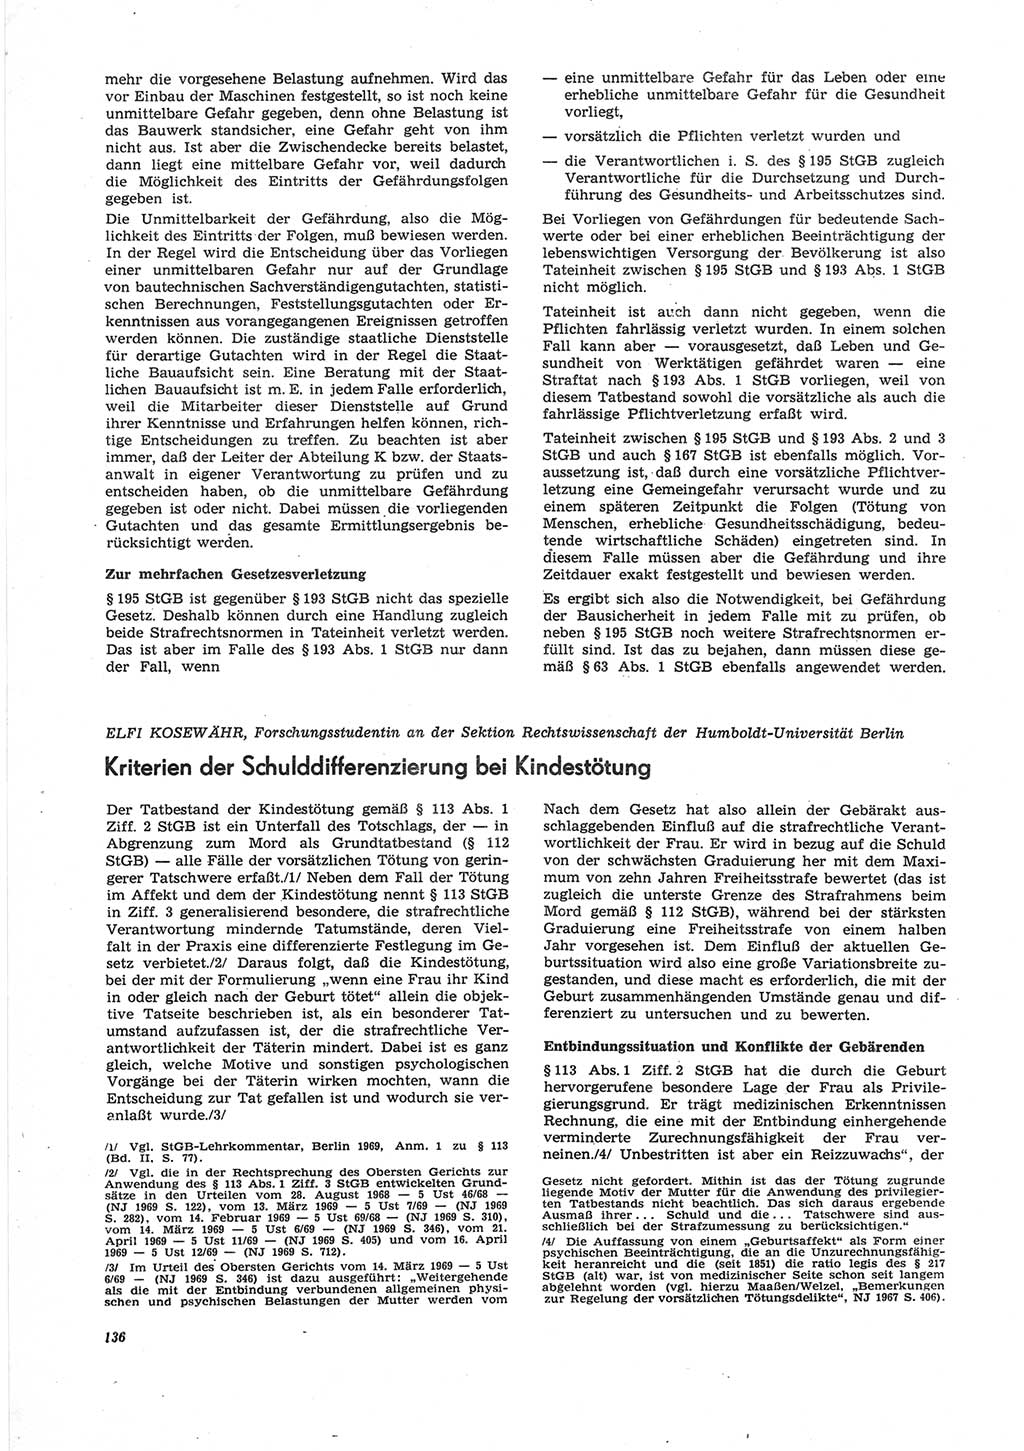 Neue Justiz (NJ), Zeitschrift für Recht und Rechtswissenschaft [Deutsche Demokratische Republik (DDR)], 25. Jahrgang 1971, Seite 136 (NJ DDR 1971, S. 136)